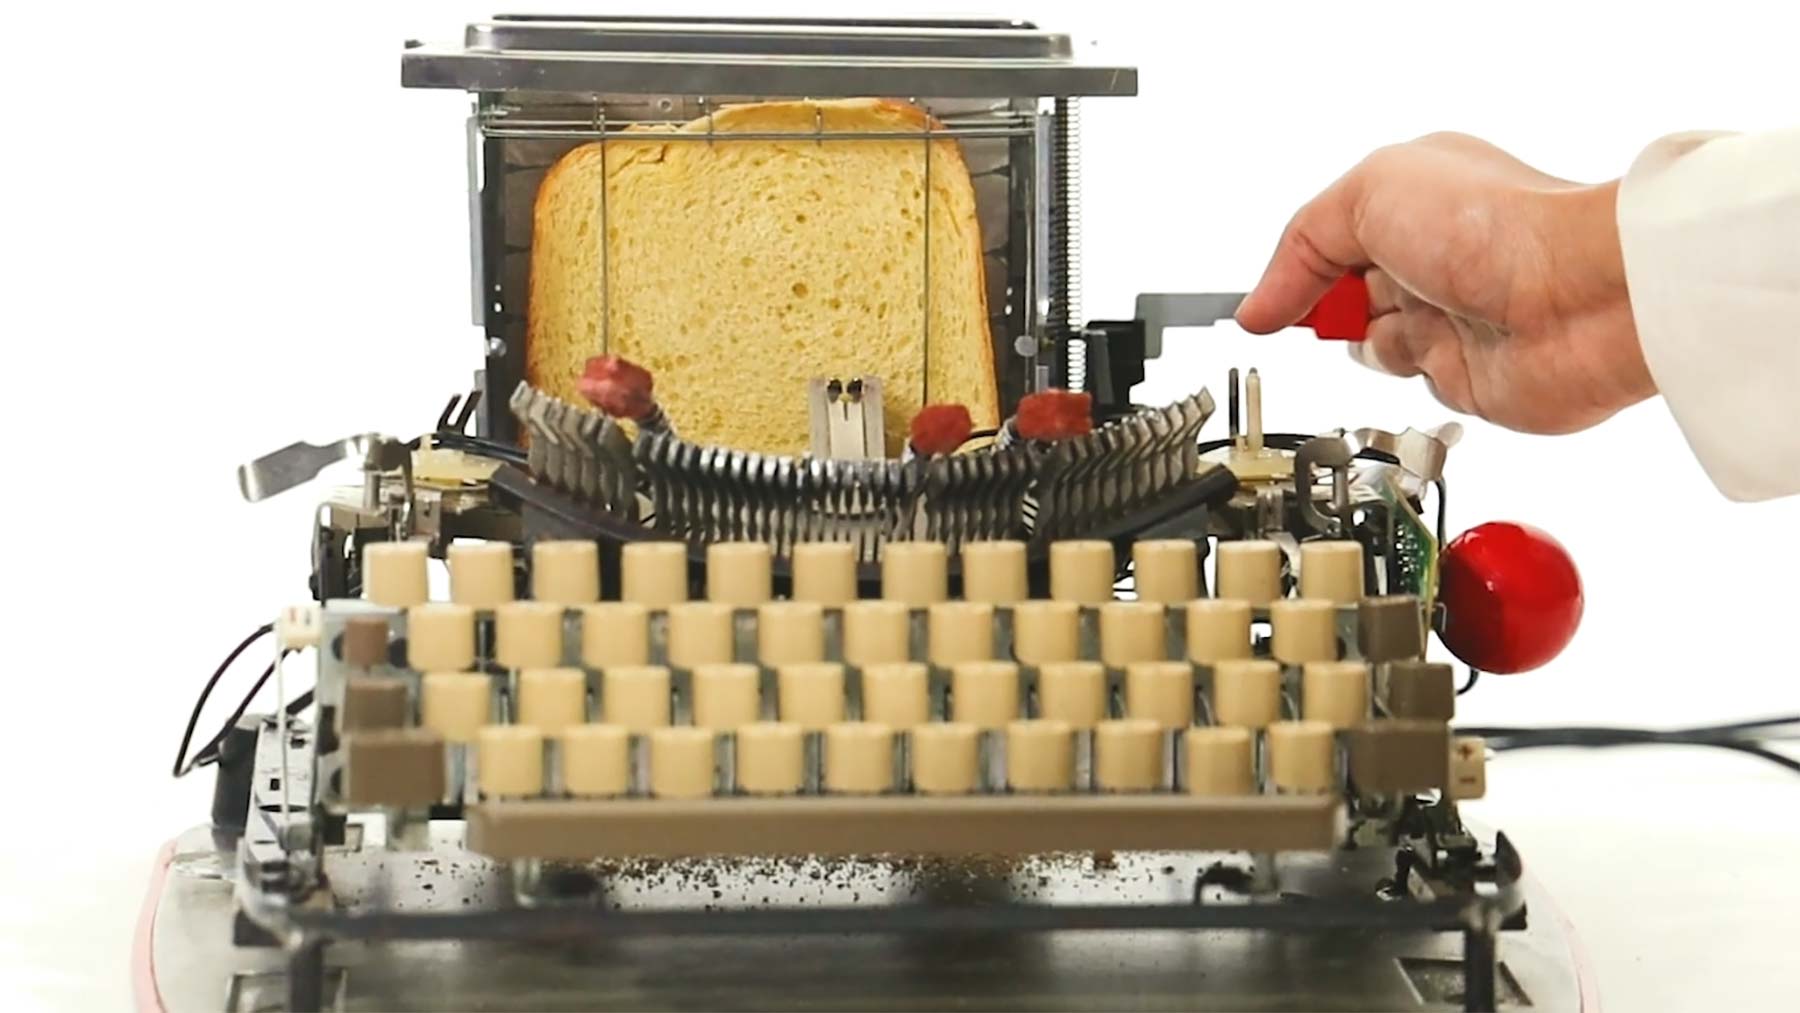 Toaster-Schreibmaschine, die Buchstaben auf Brot schreibt